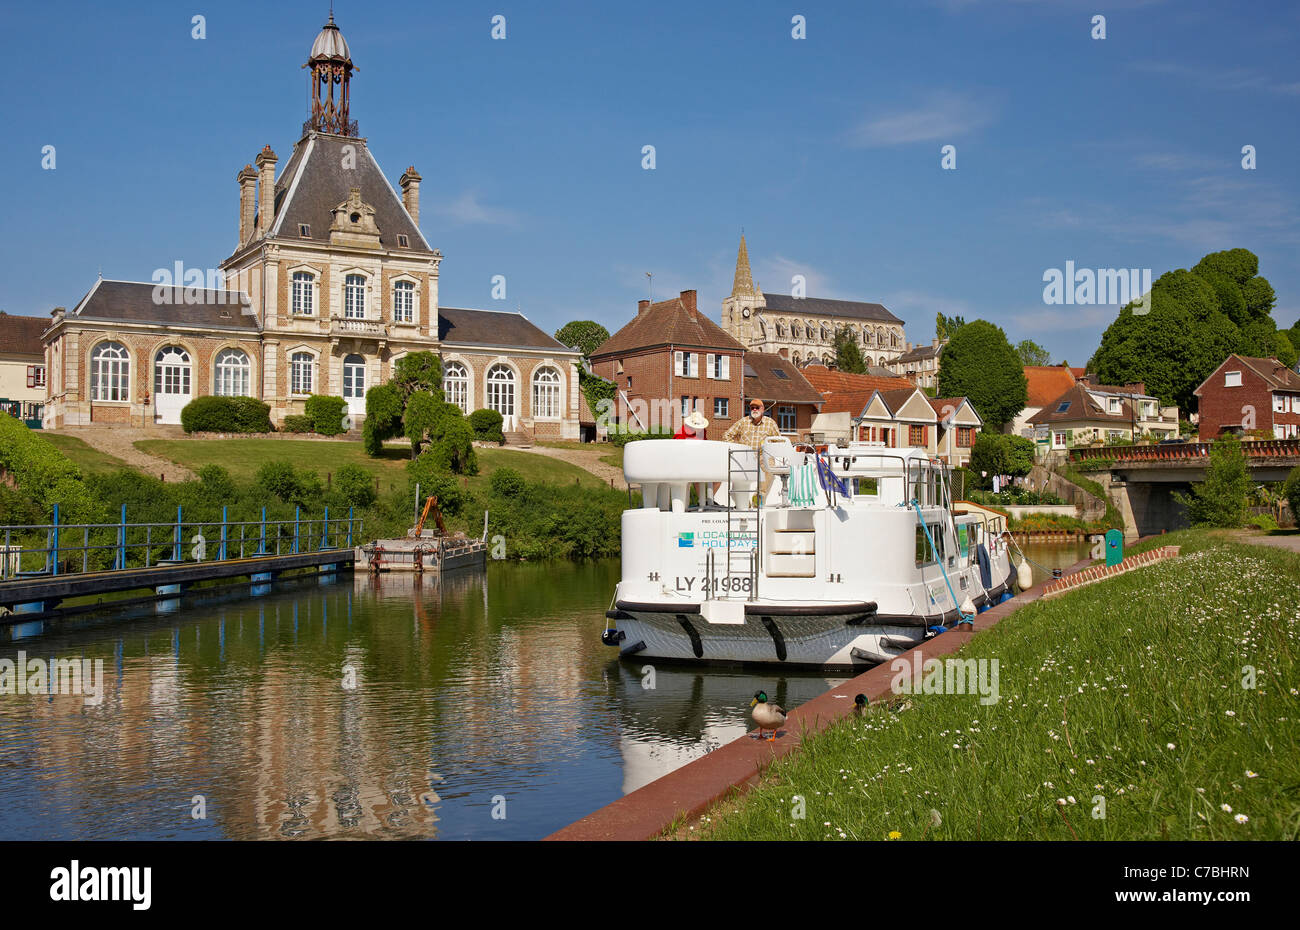 Il villaggio lungo il fiume Somme con il municipio, la chiesa e la casa galleggiante, Dept. Somme Picardia, Francia, Europa Foto Stock